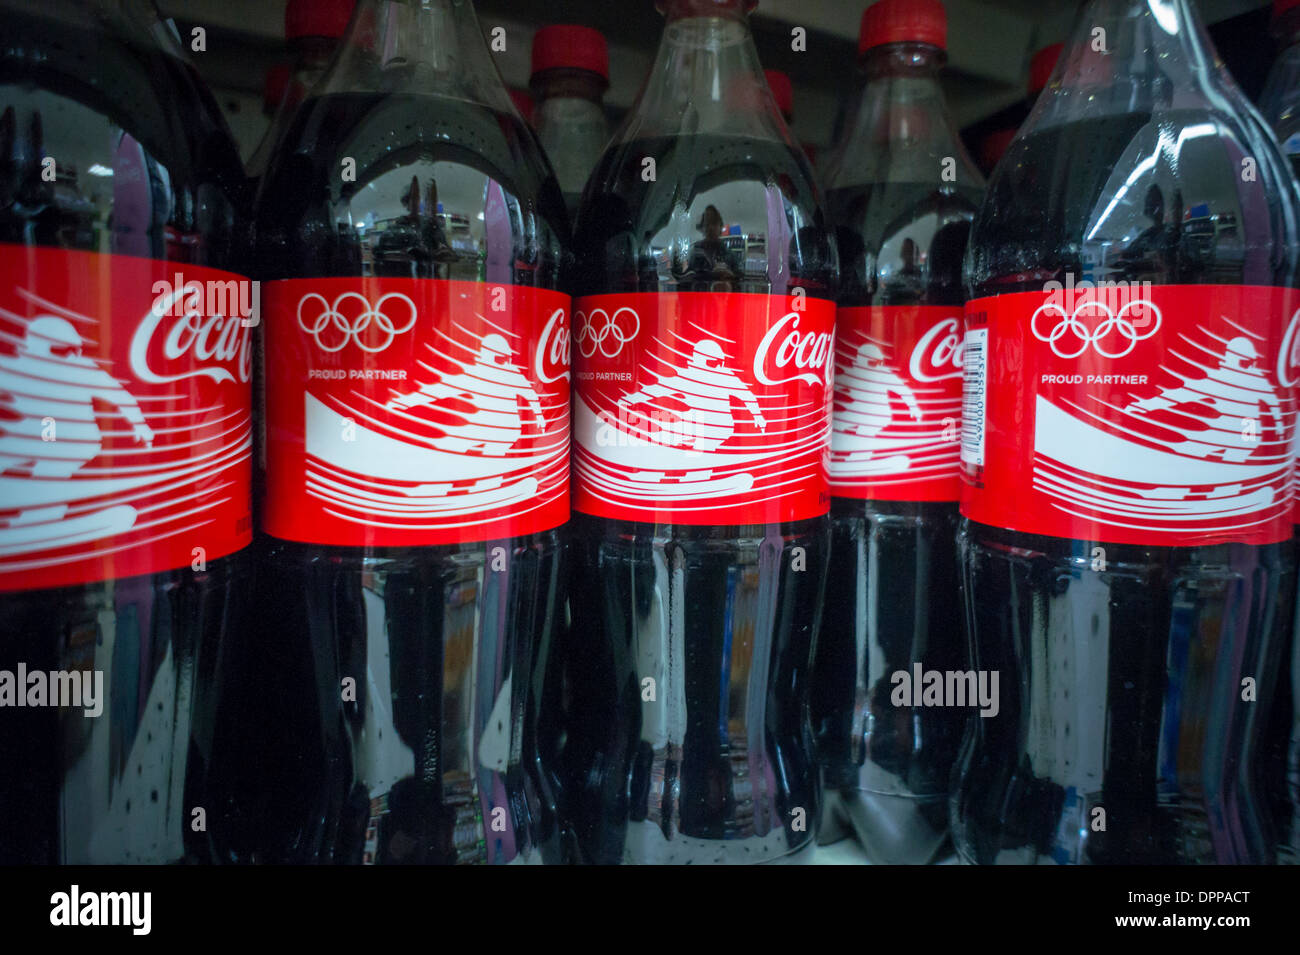 Les bouteilles de Coca-Cola dans un supermarché de New York promouvoir leur participation aux Jeux Olympiques d'hiver de Sotchi 2014 Banque D'Images